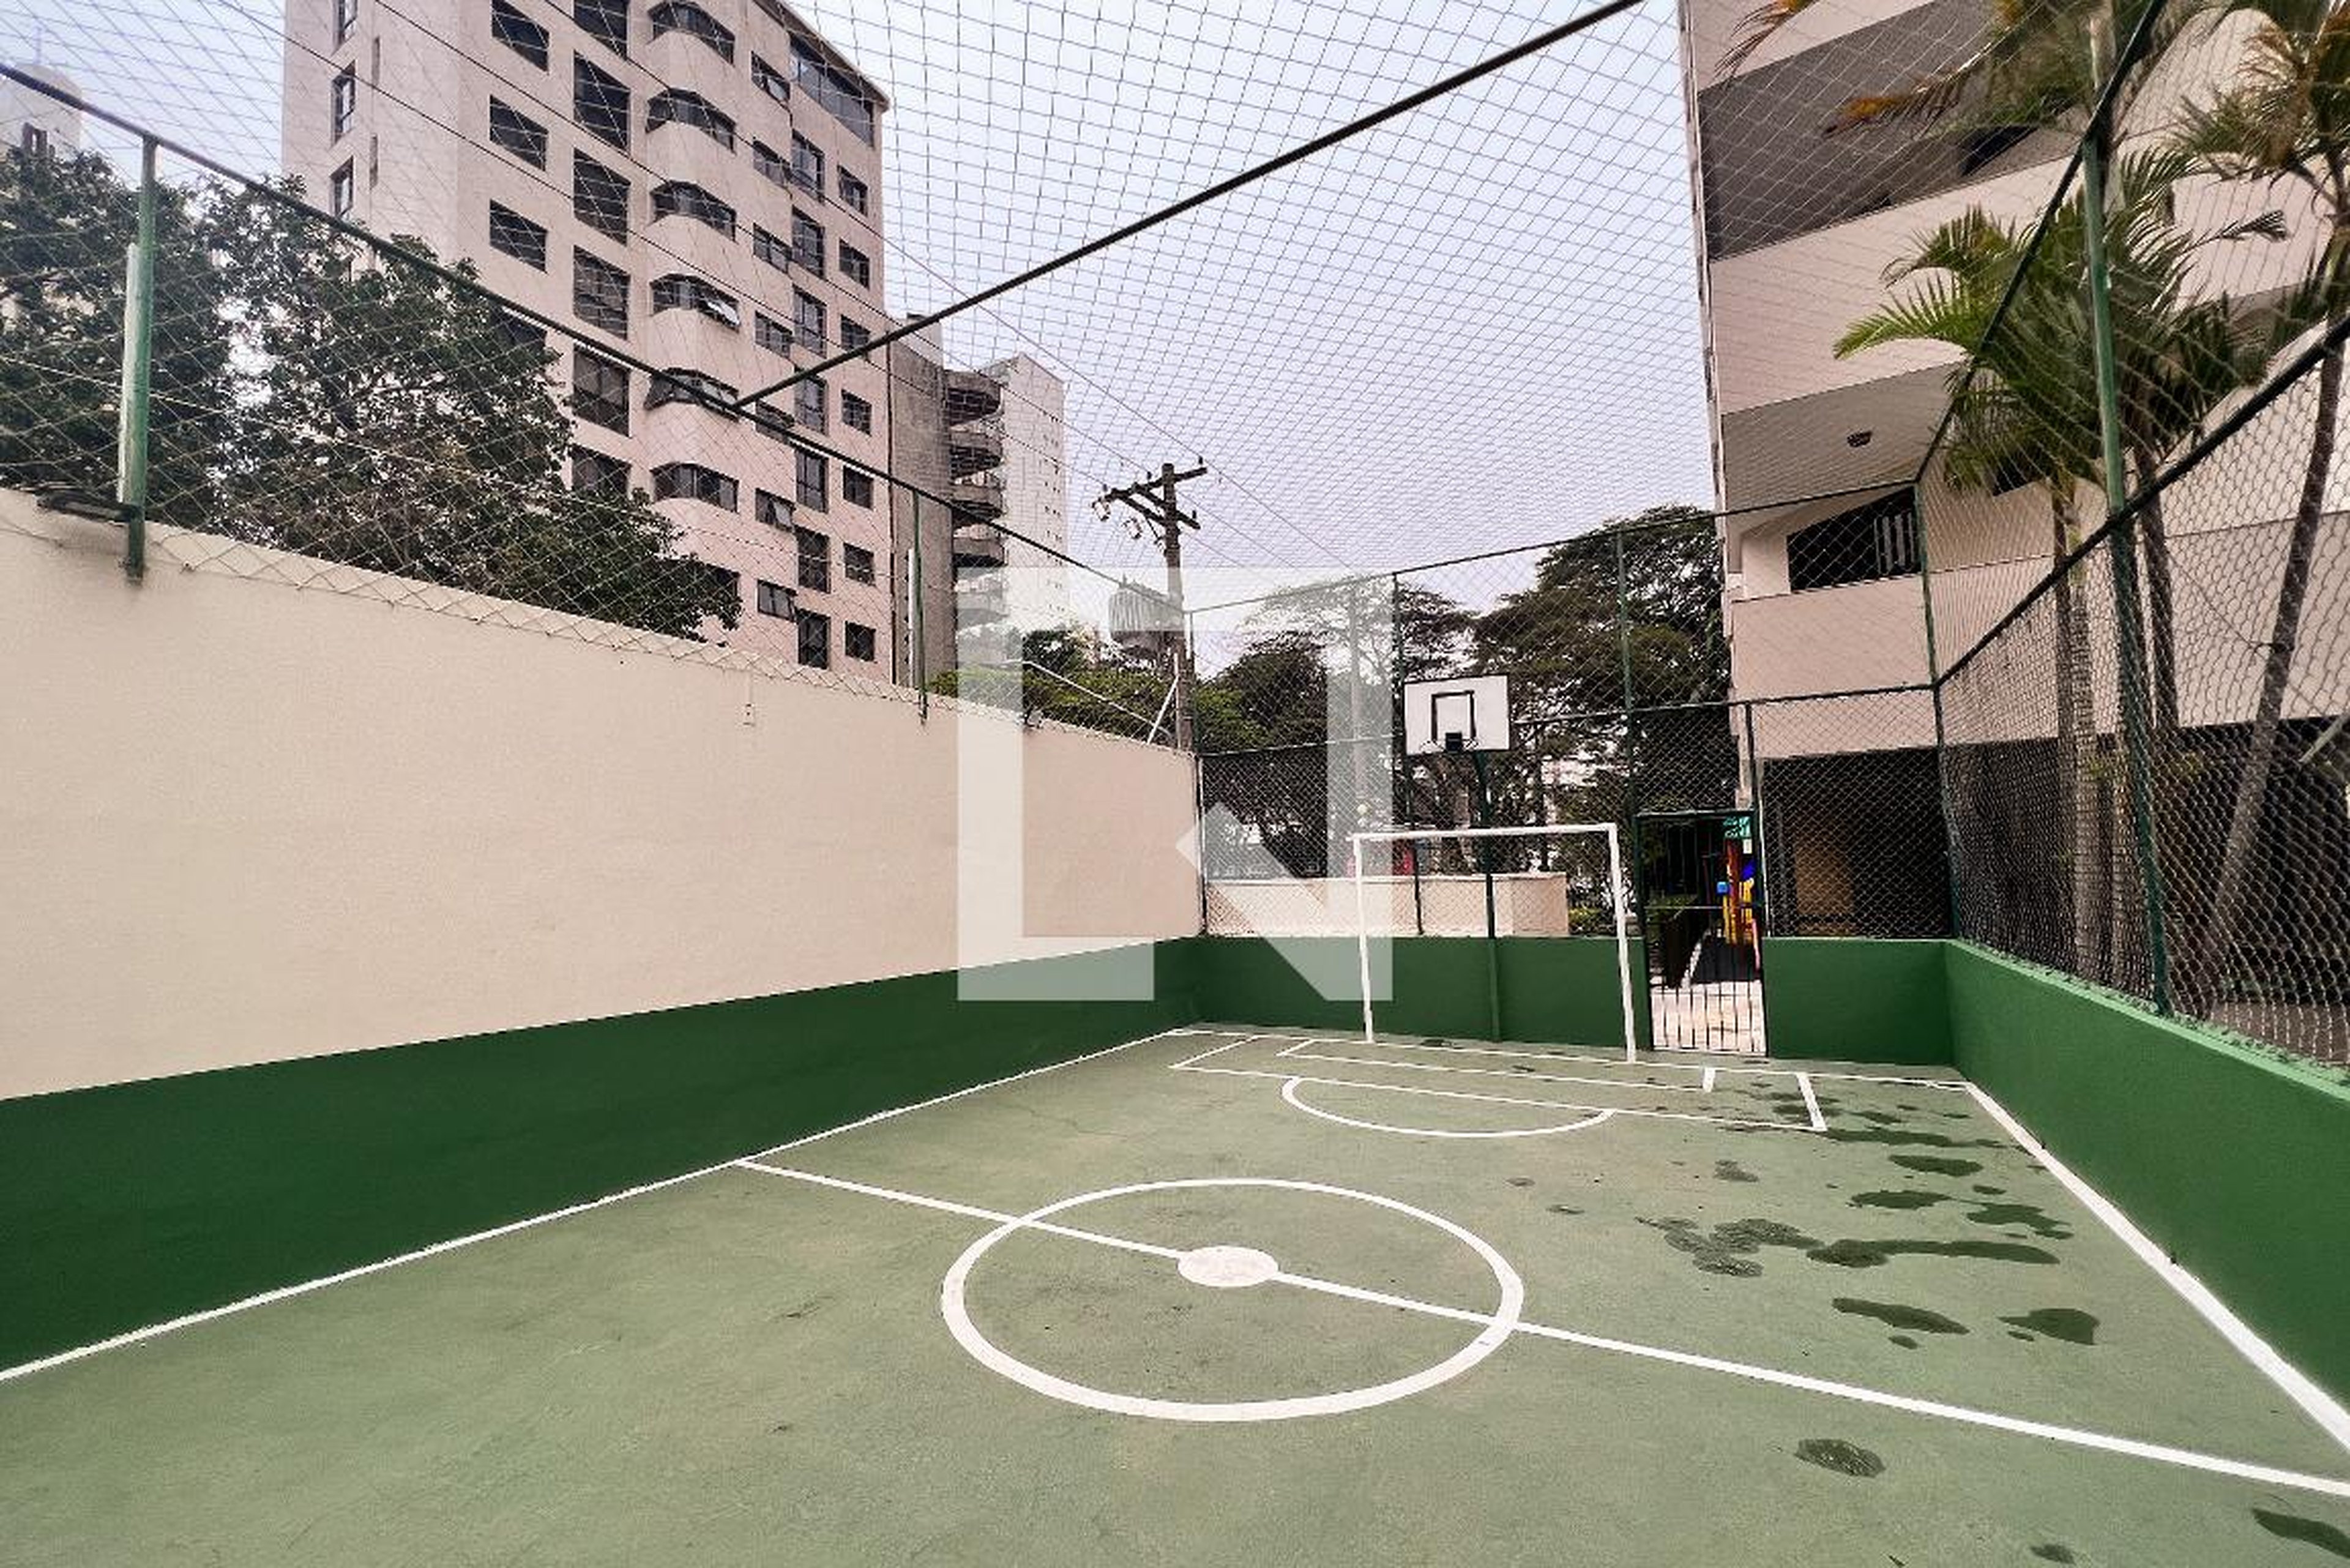 Área Comum - Quadra Esportiva - Ibirapuera Park